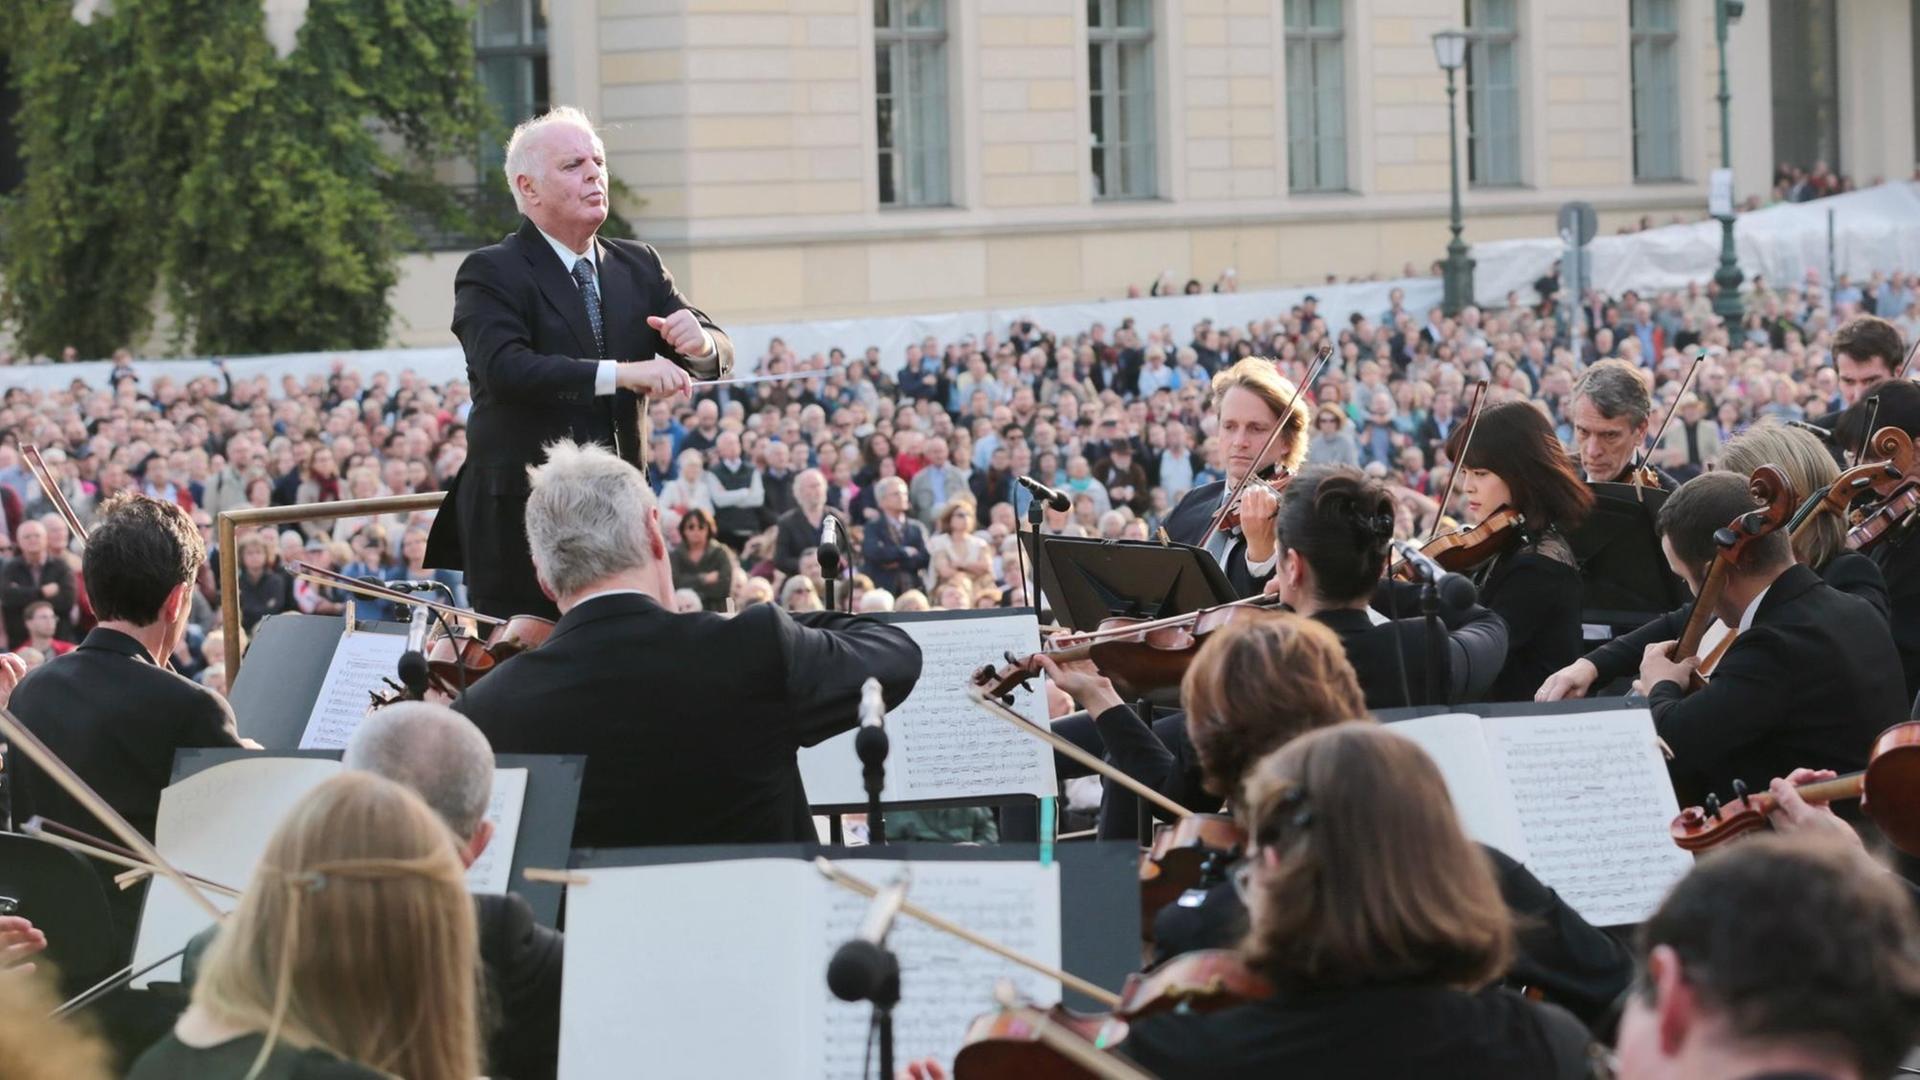 Ein Mann mit grauen Haaren steht inmitten eines Orchesters auf einem Pult und dirigiert.